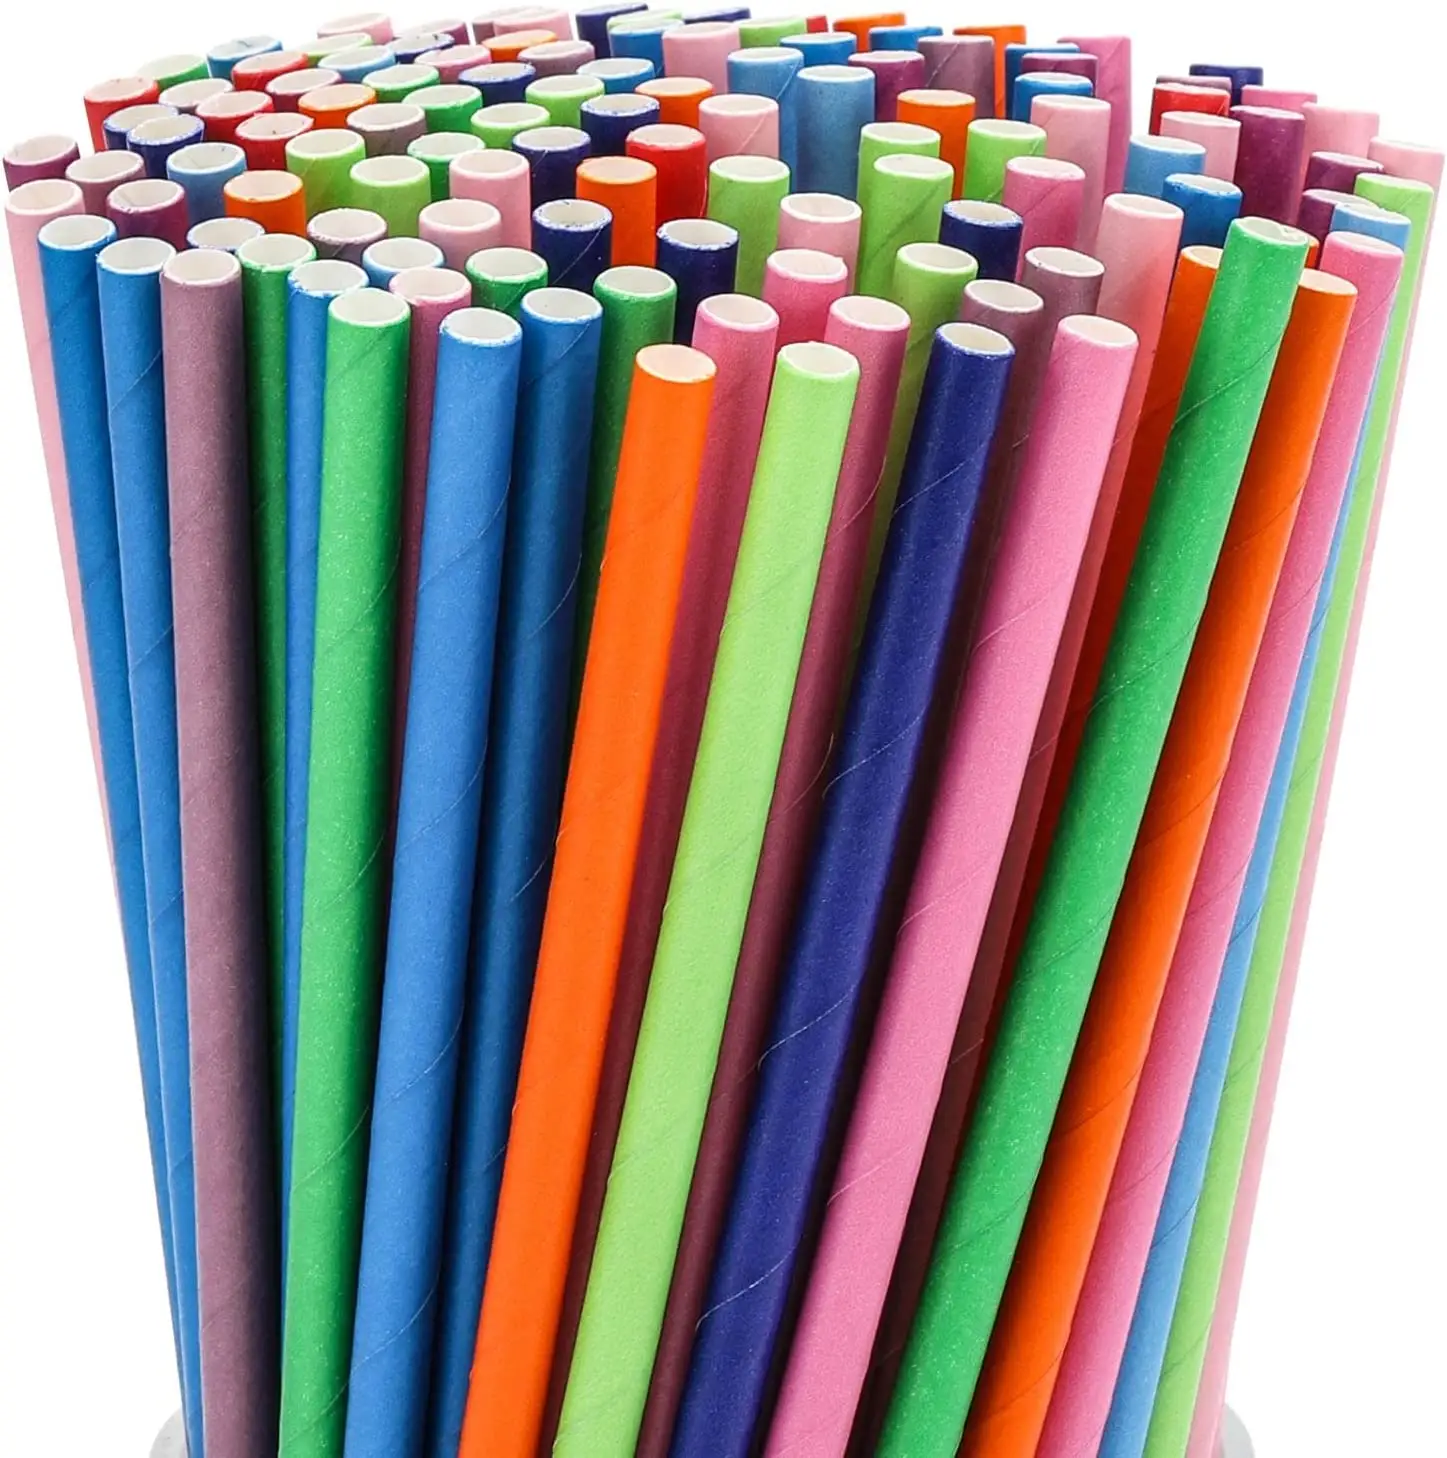 Yi Wu manufacturer diagonal cut sharp ending biodegradable bubble tea paper straws